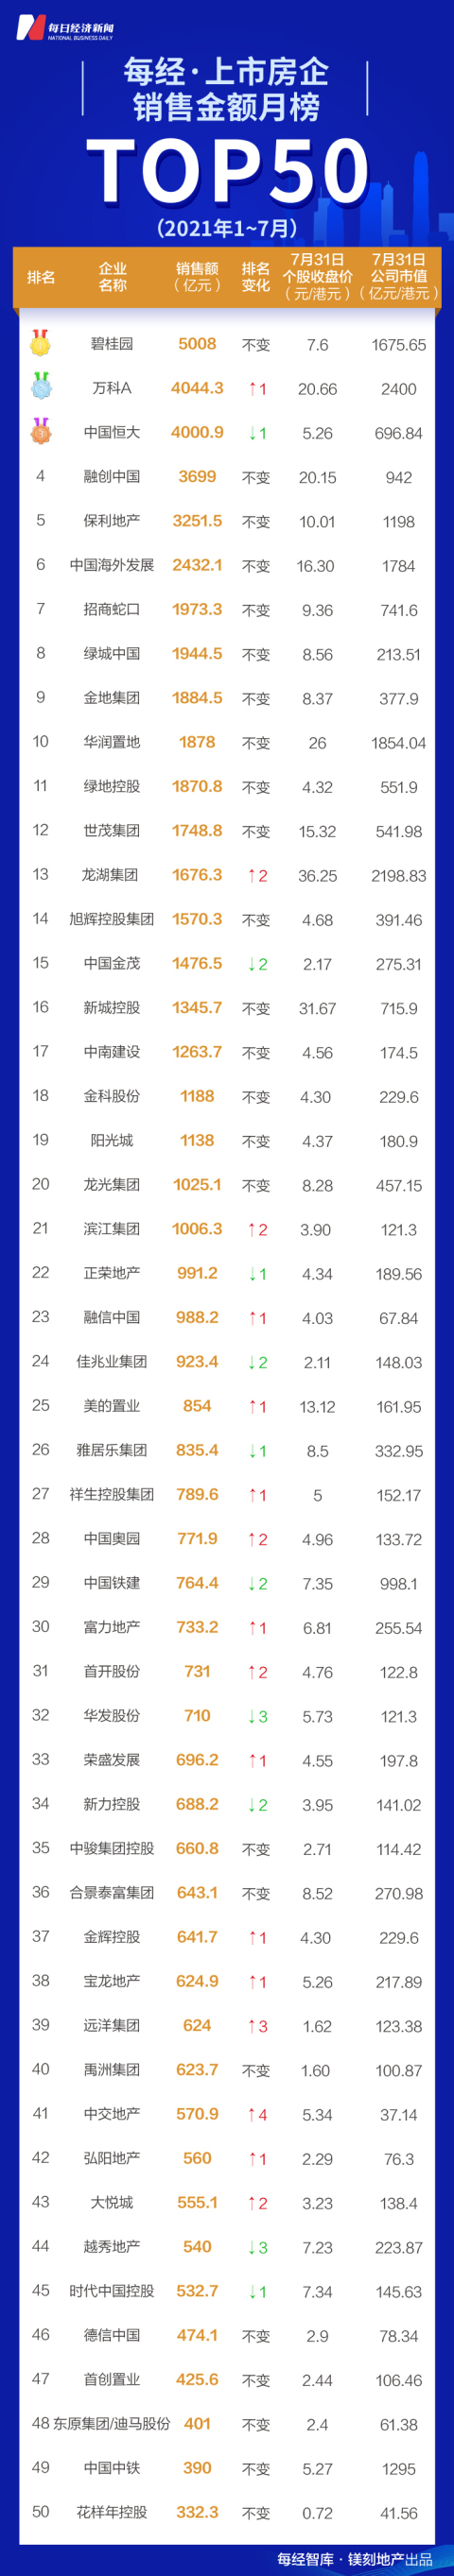 碧万恒前7月卖了1.3万亿 TOP50销售额进度超去年同期